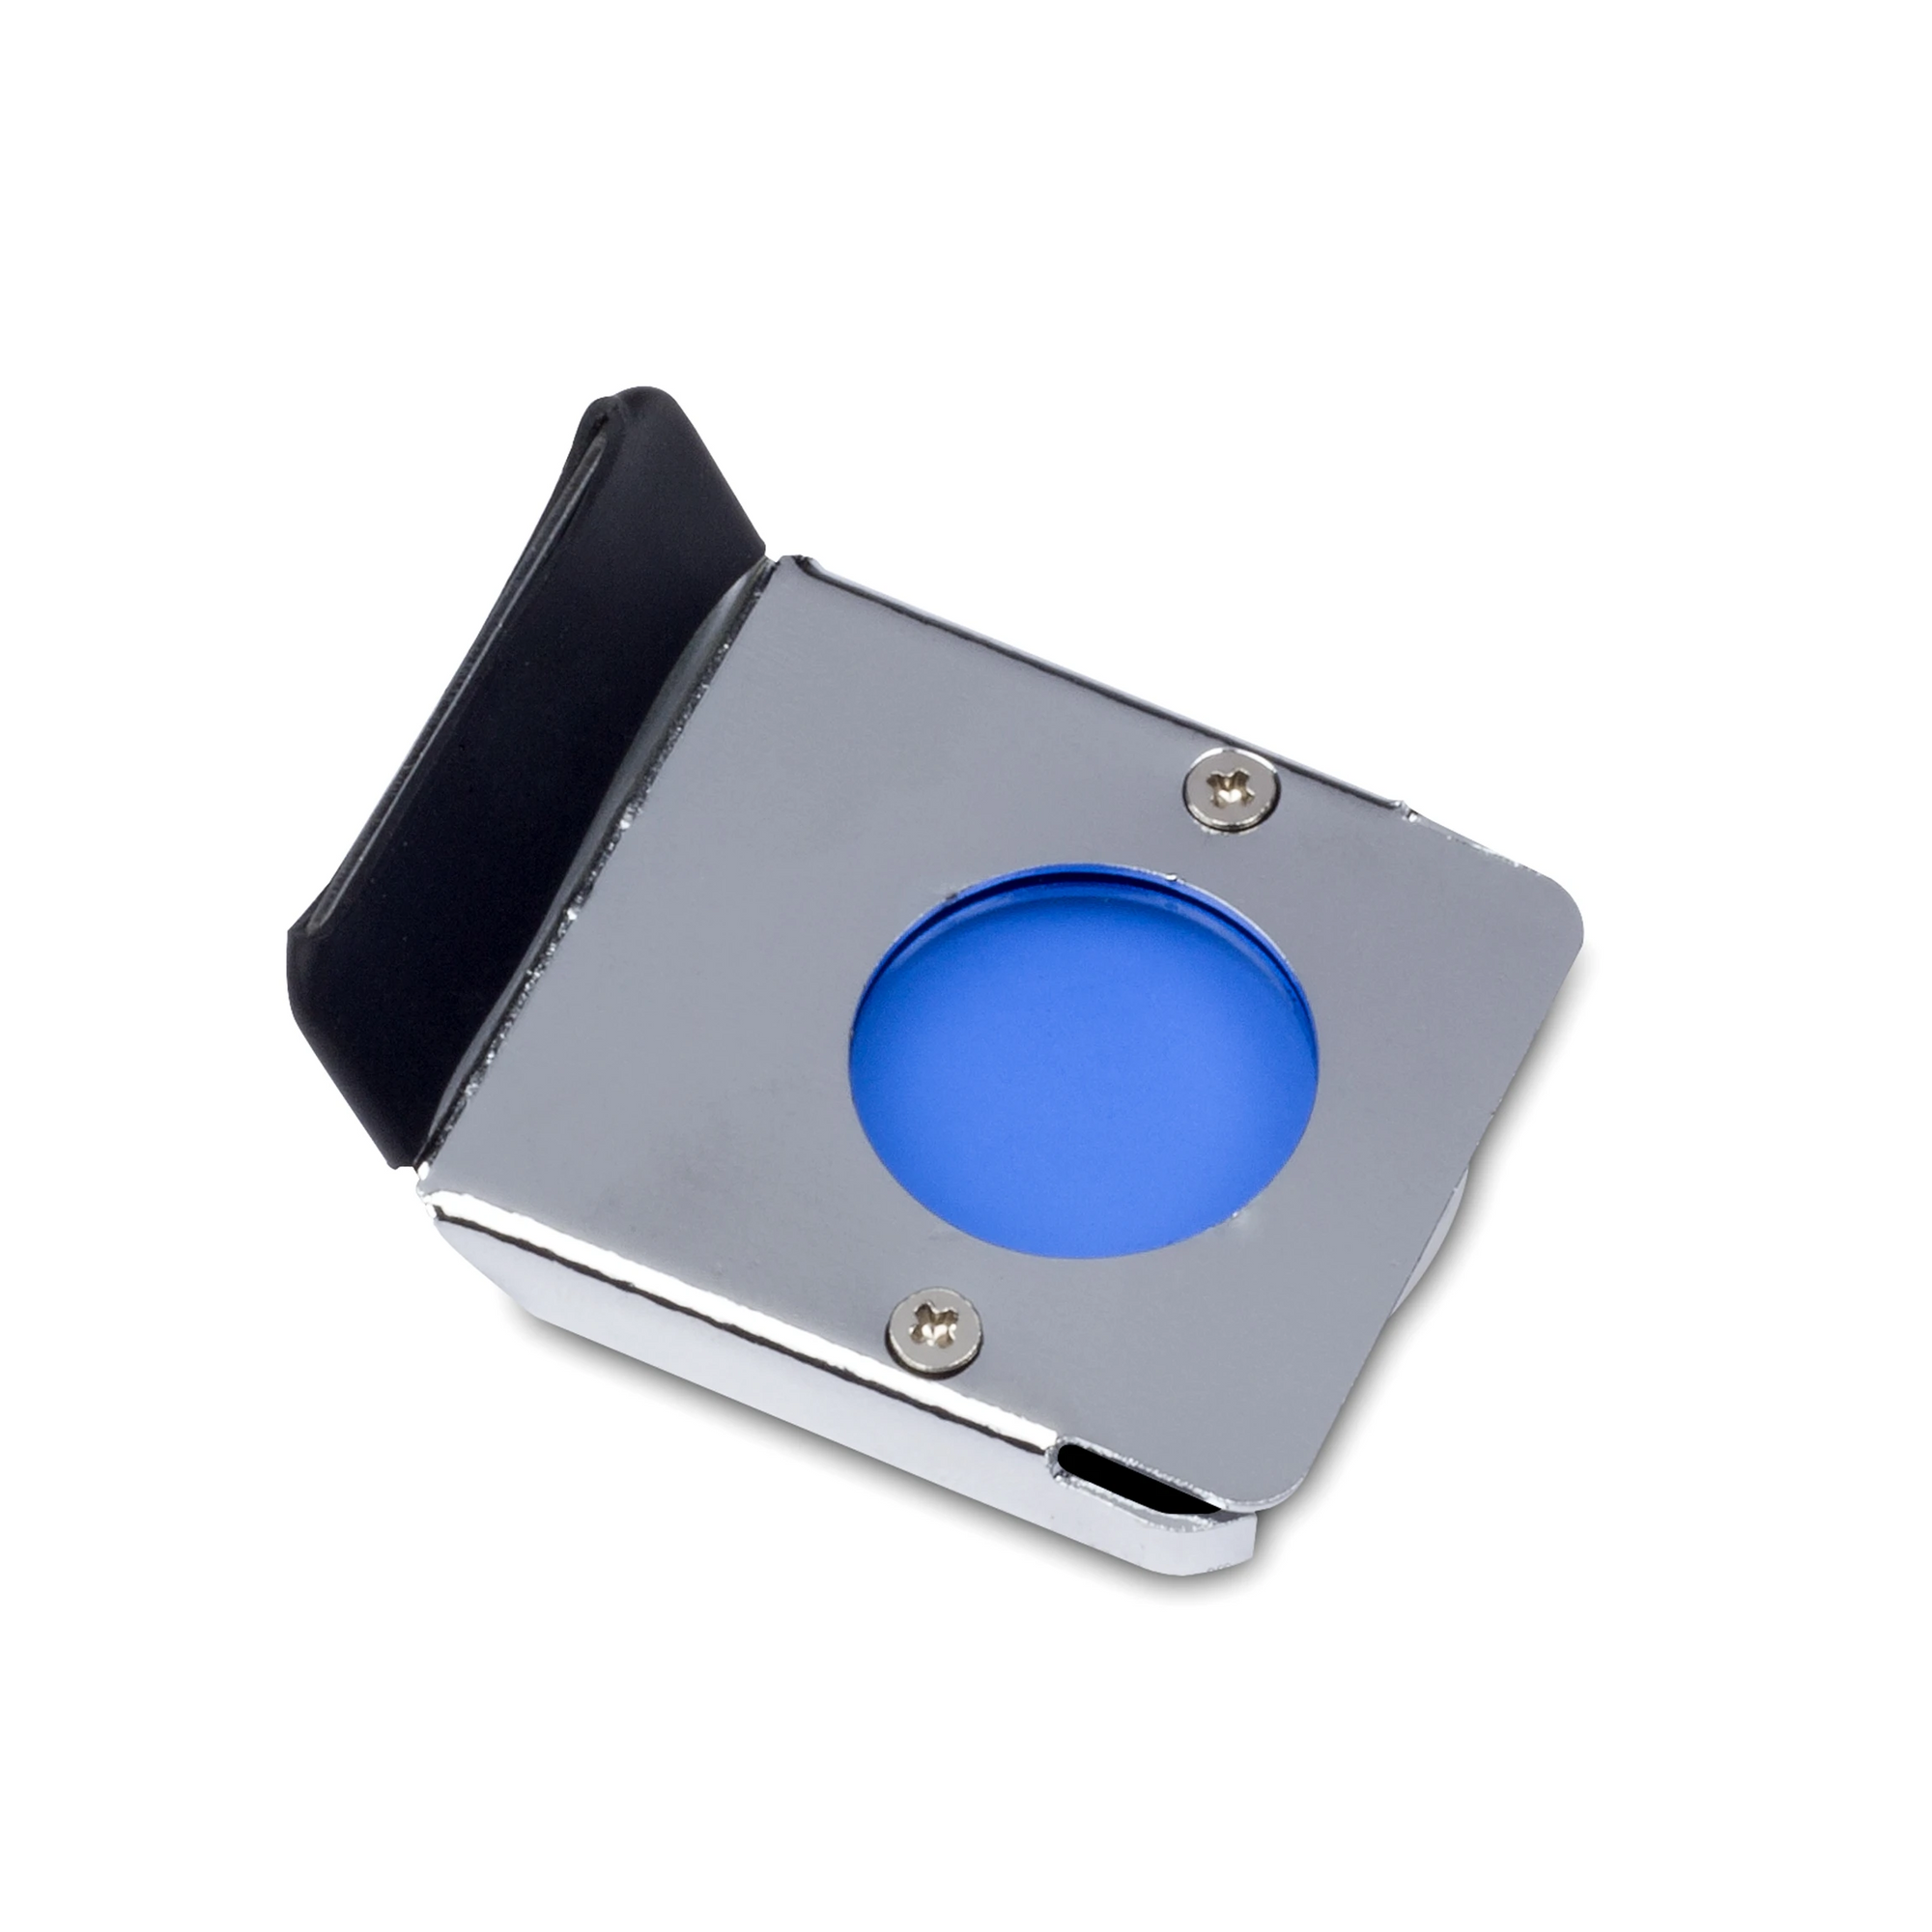 Accessories for Motic Fiber Optic Illuminator